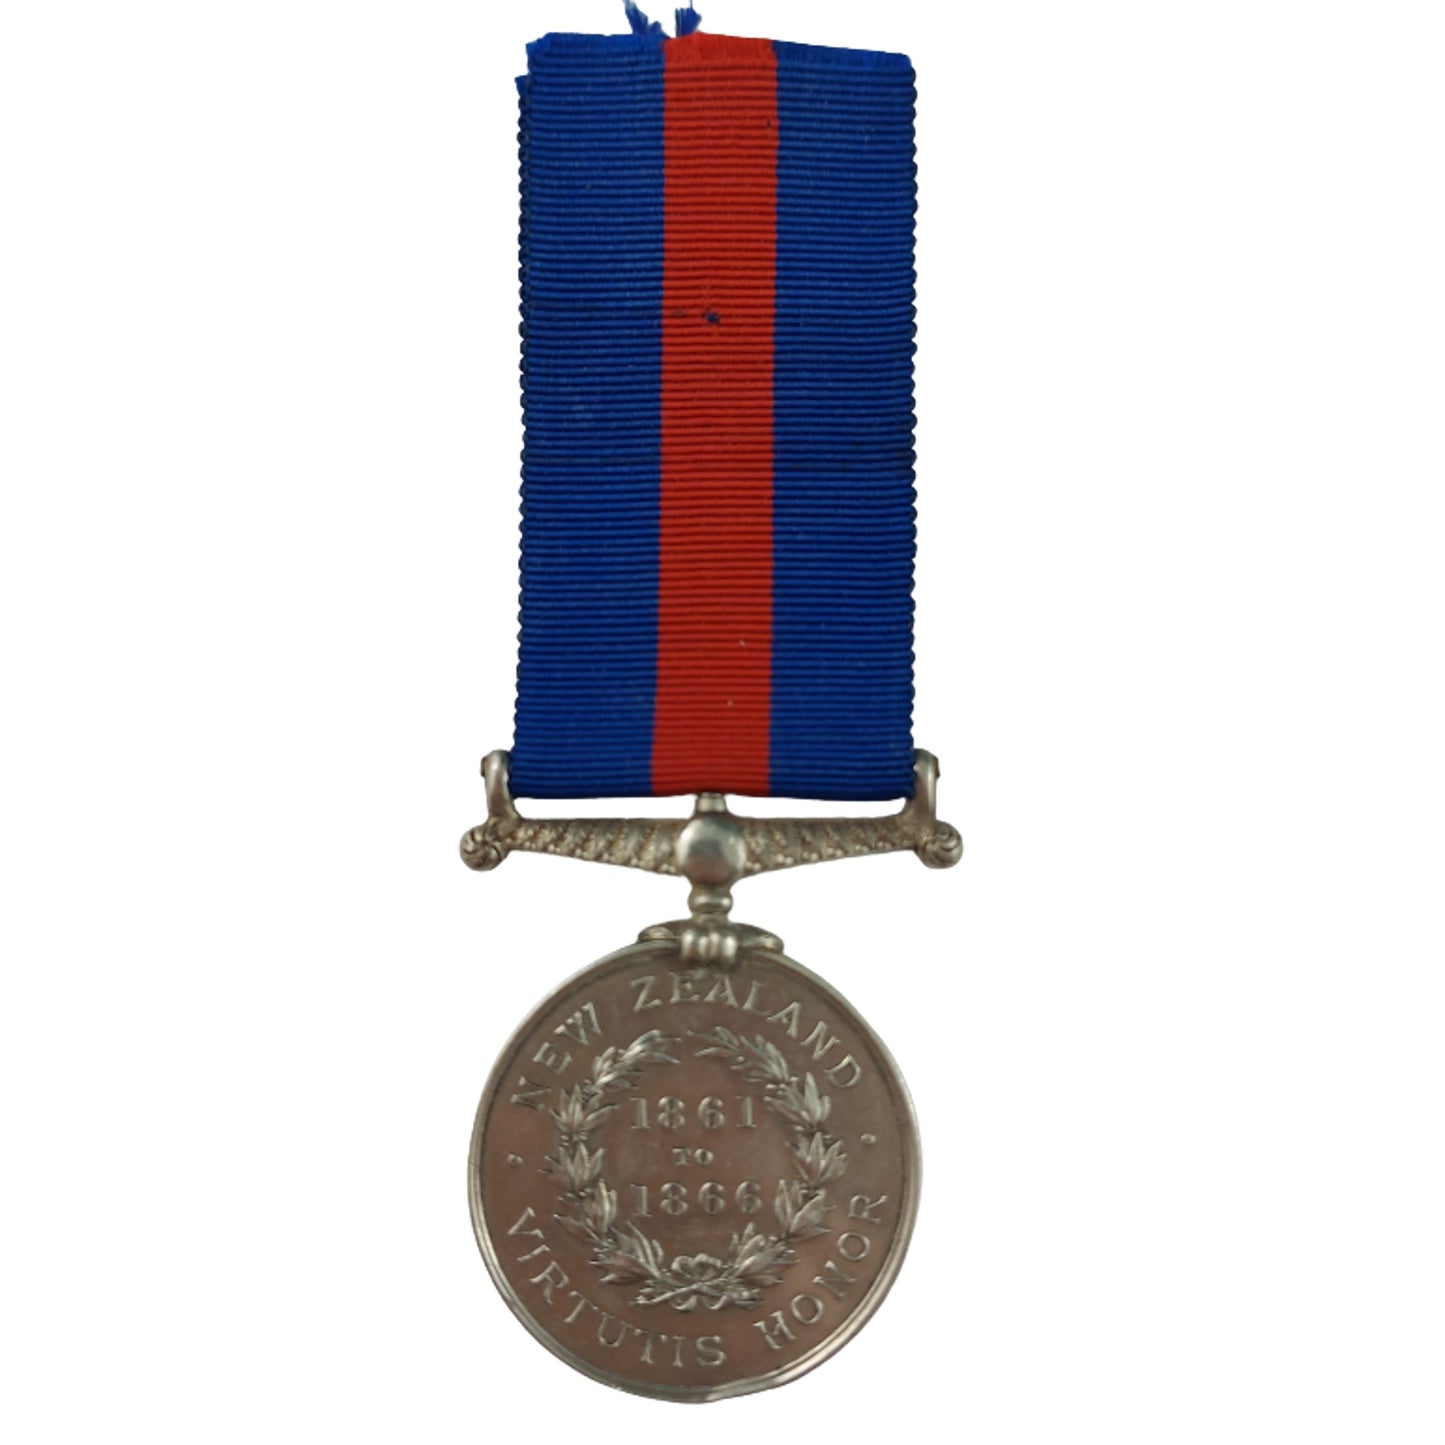 1861-1866 New Zealand Medal 57th Regiment